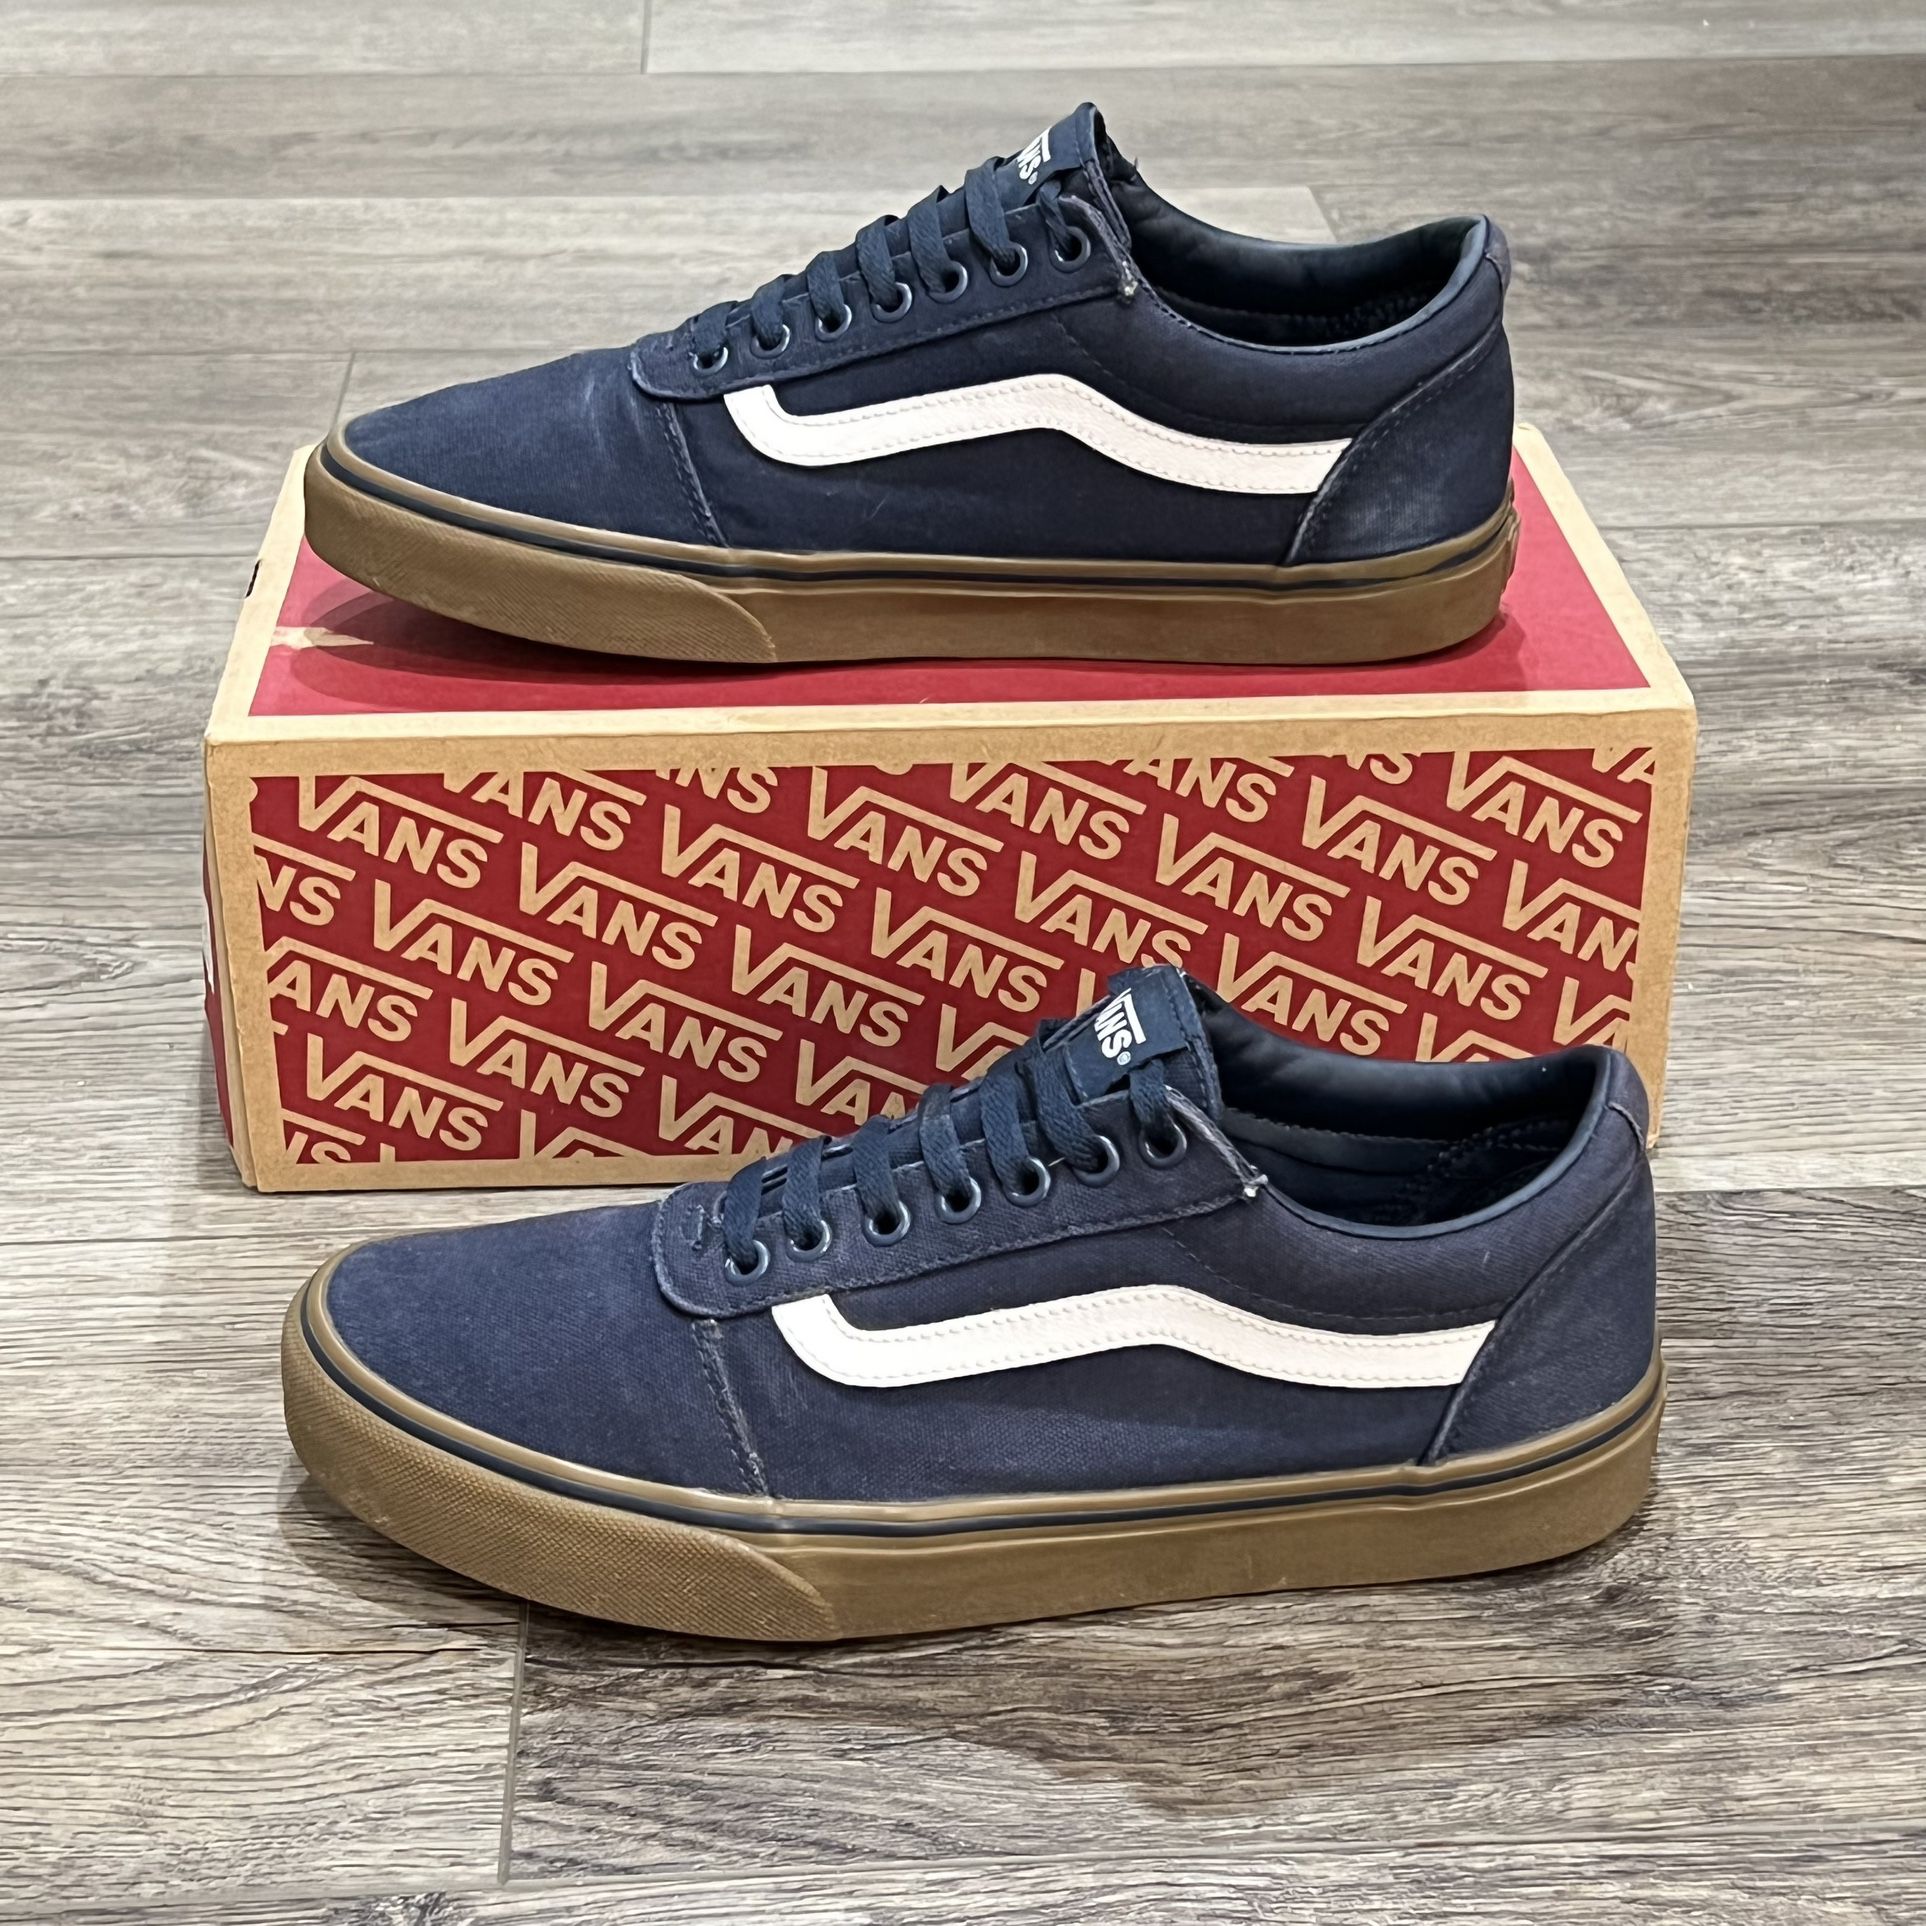 strøm Konfrontere fintælling Vans Old Skool Navy Blue Gum Sneakers Men's Size 9.5 for Sale in Glendale,  AZ - OfferUp